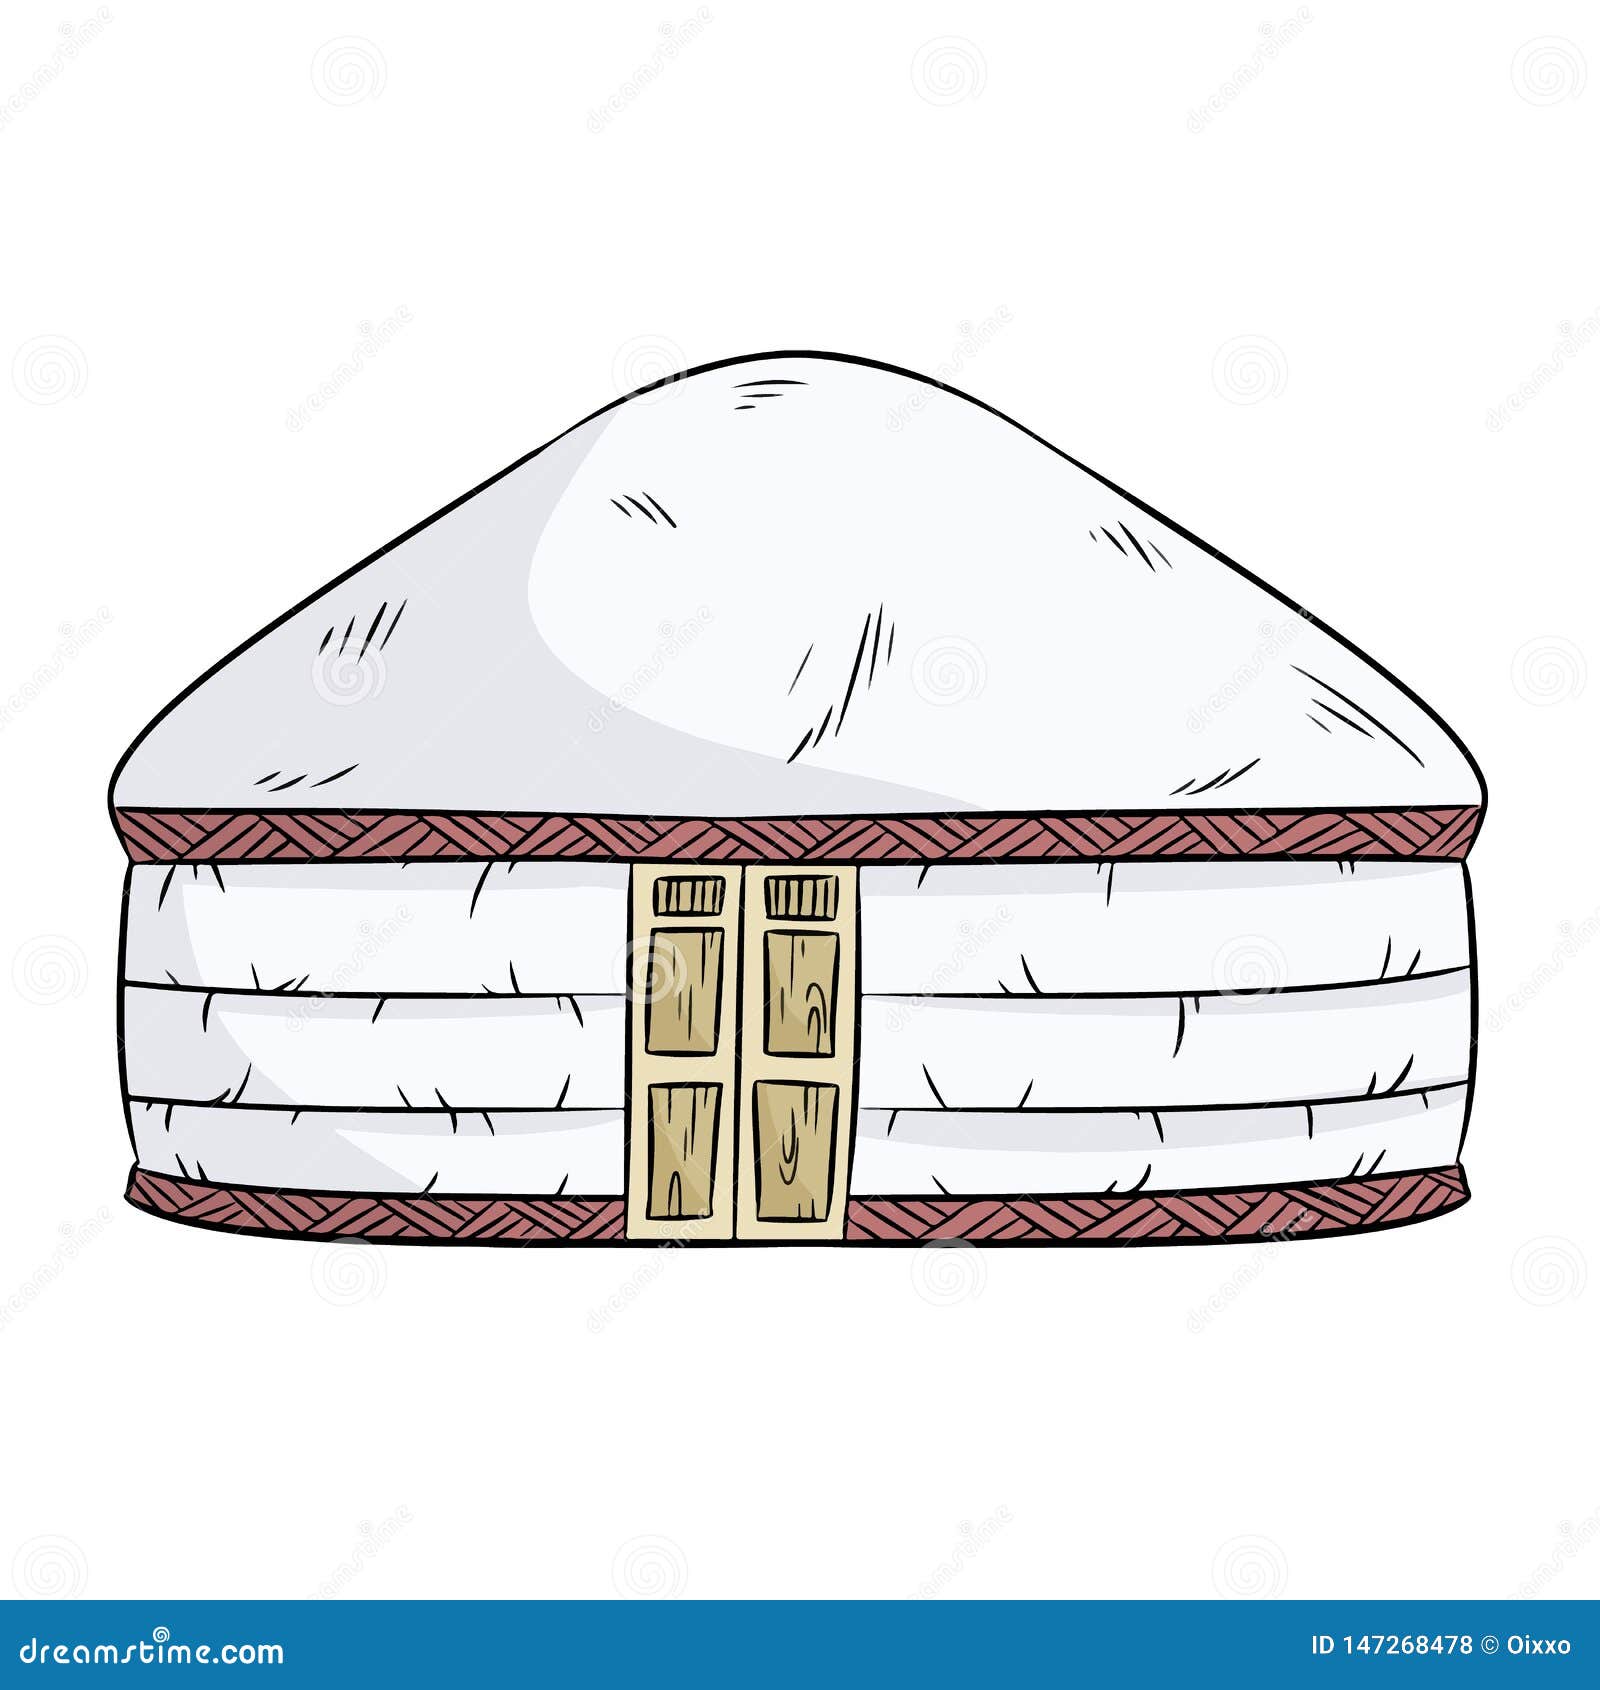 yurta of nomads. turk nomad tent yurt house 